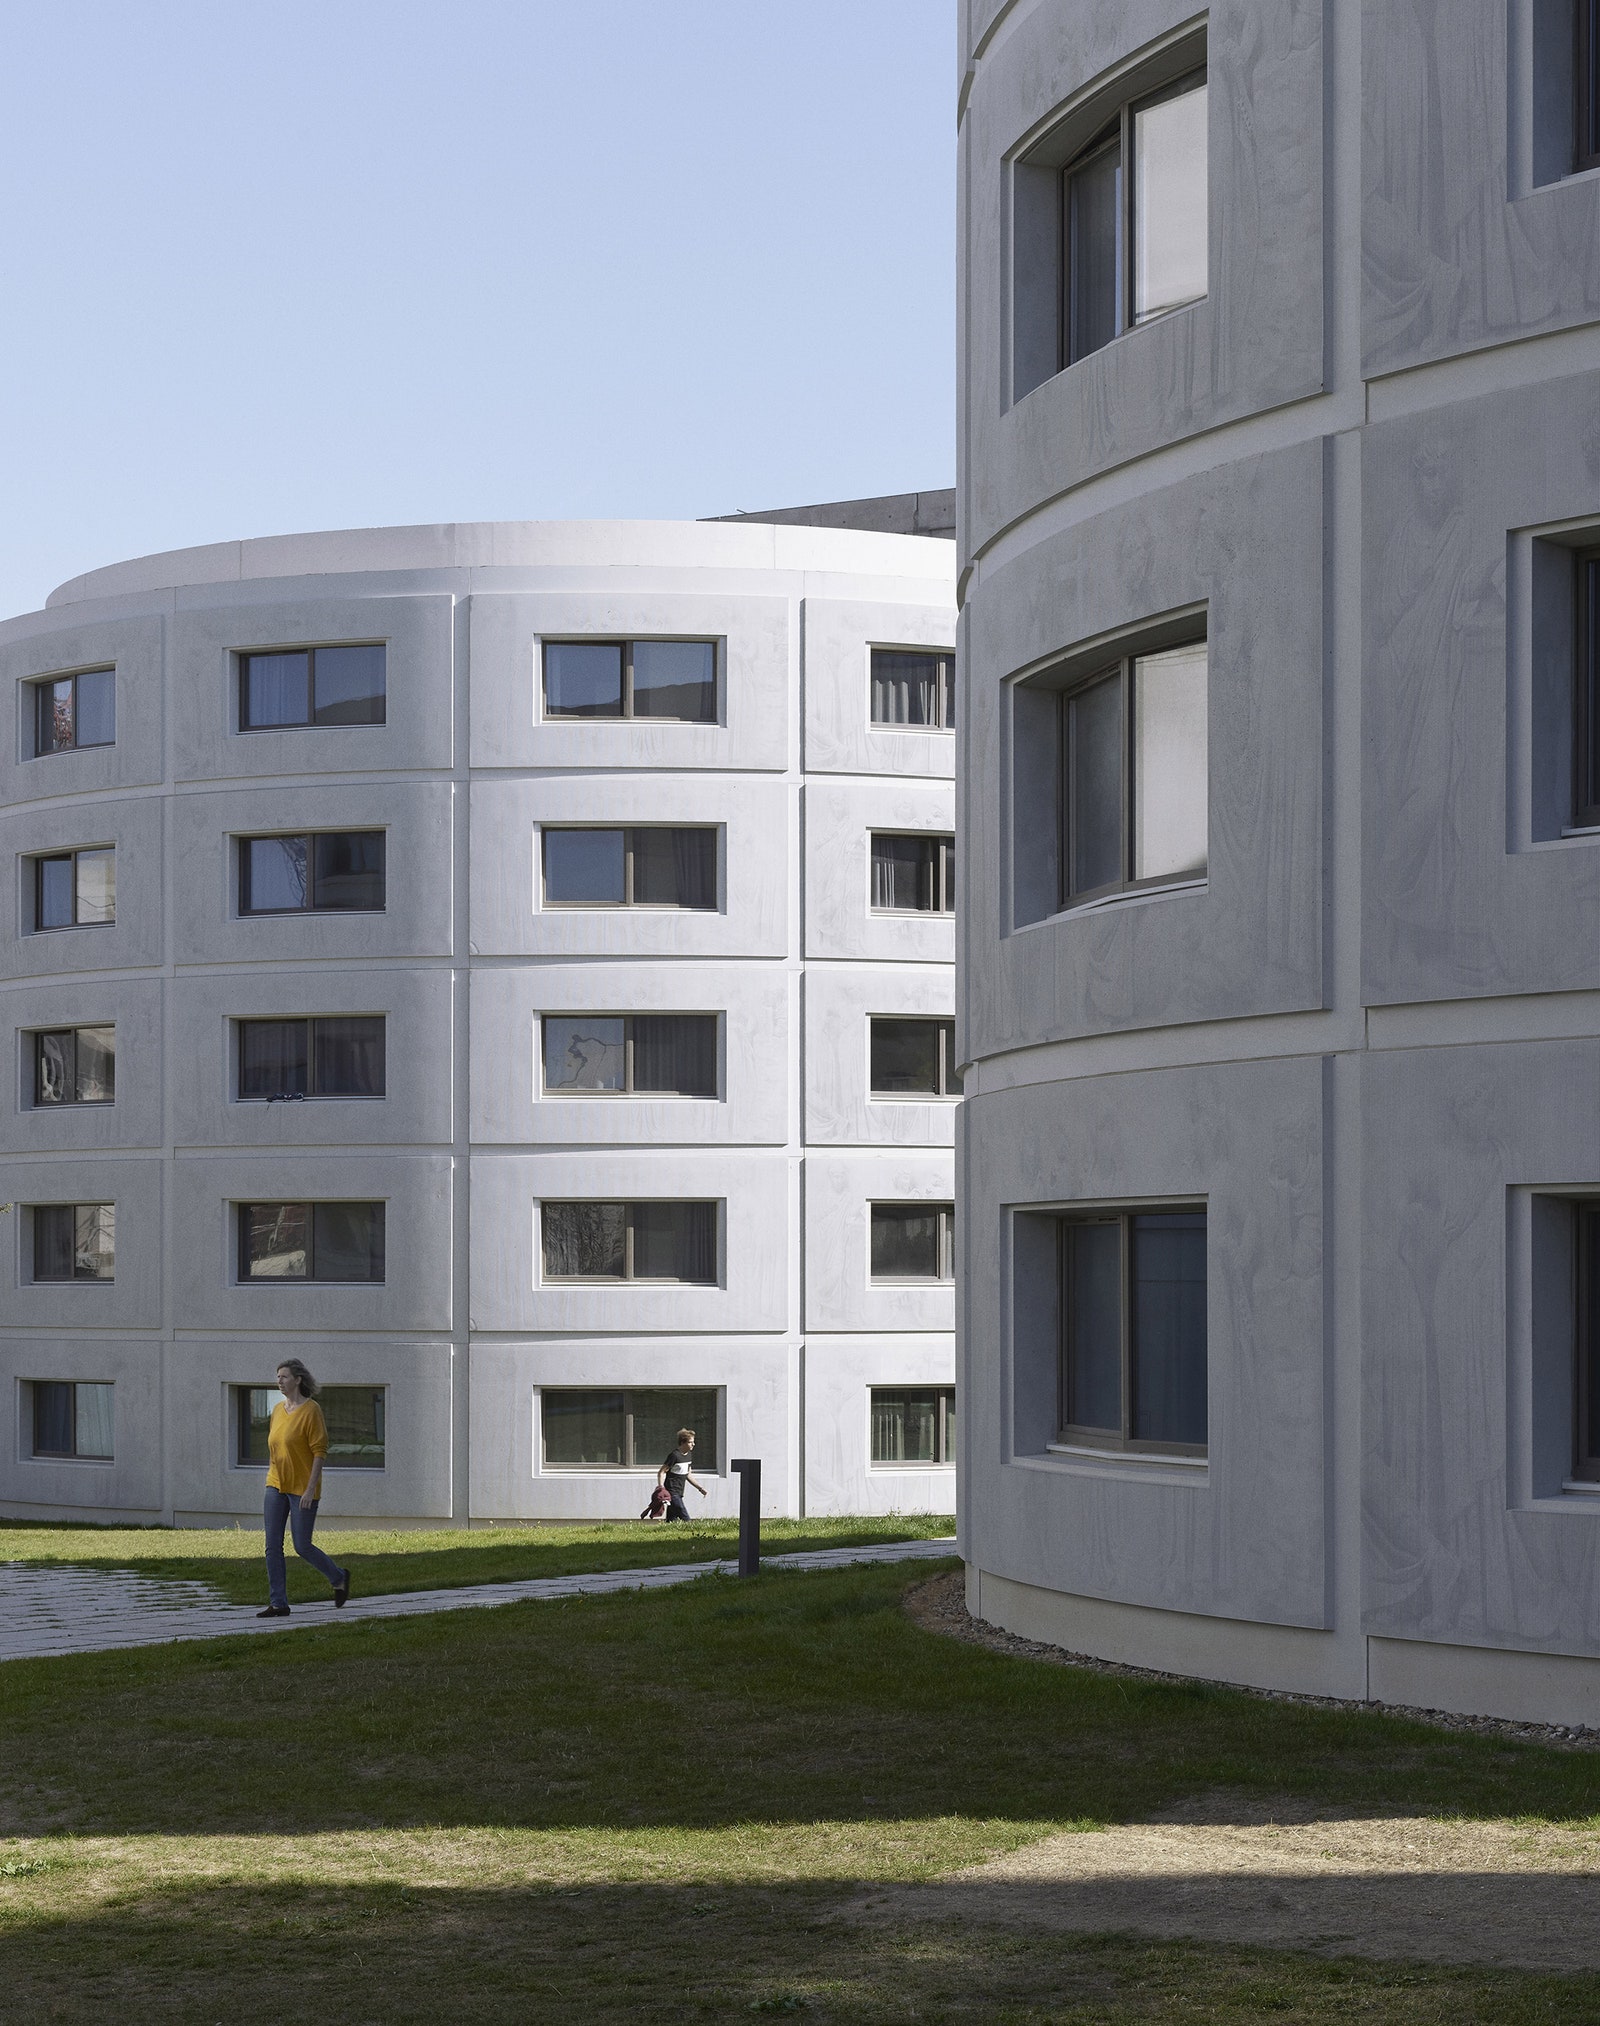 Студенческие общежития с гравировкой на фасадах